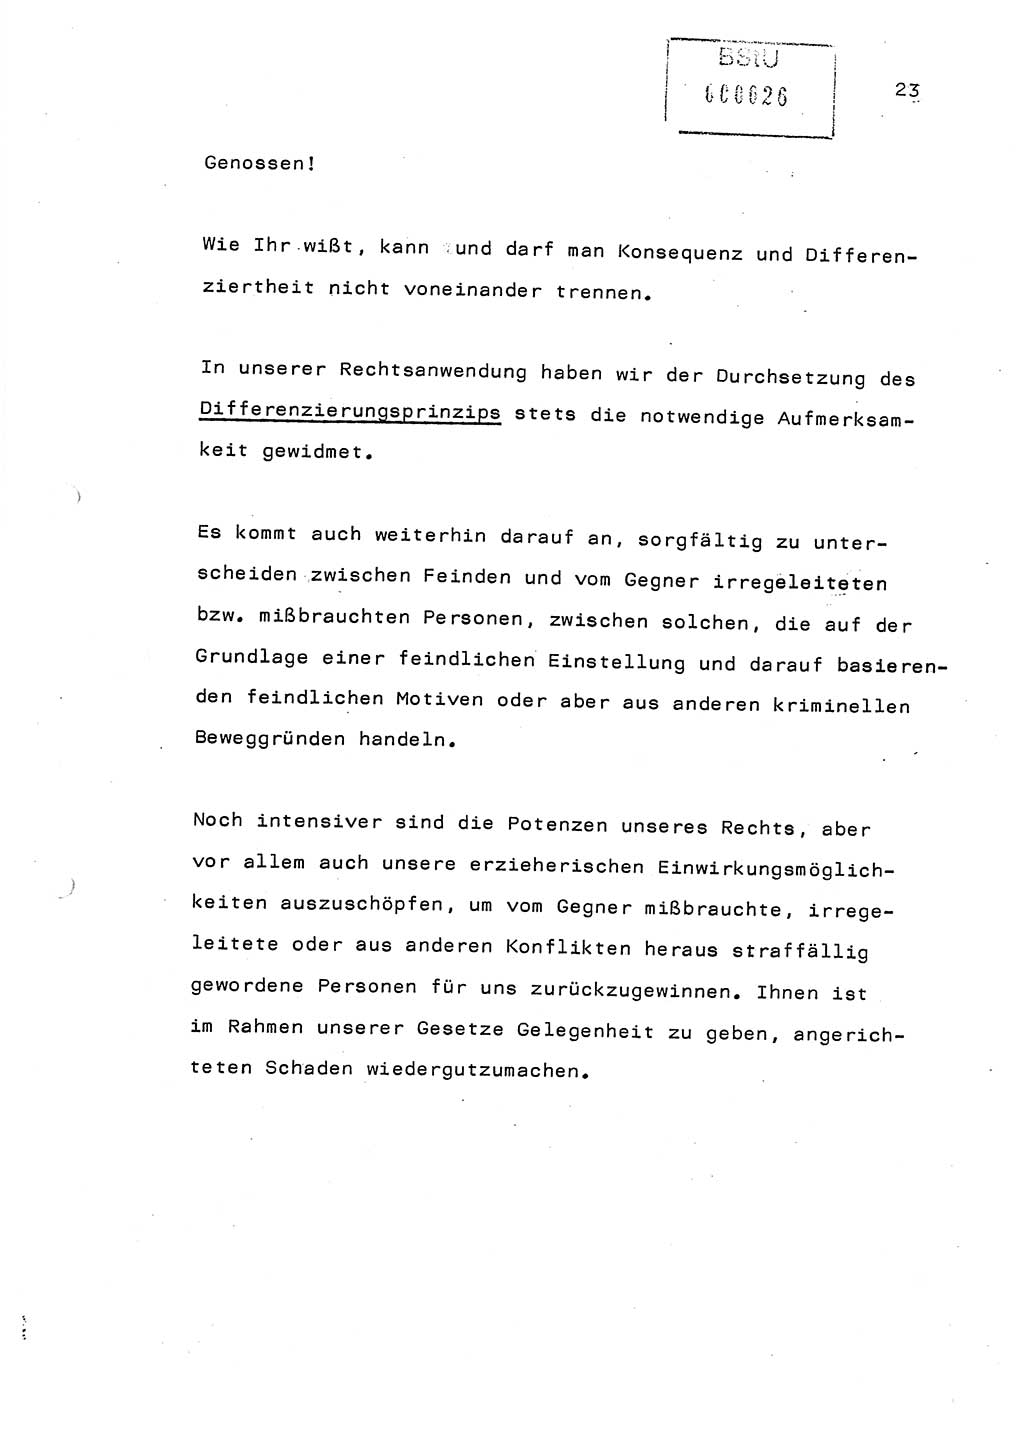 Referat (Generaloberst Erich Mielke) auf der Zentralen Dienstkonferenz am 24.5.1979 [Ministerium für Staatssicherheit (MfS), Deutsche Demokratische Republik (DDR), Der Minister], Berlin 1979, Seite 23 (Ref. DK DDR MfS Min. /79 1979, S. 23)